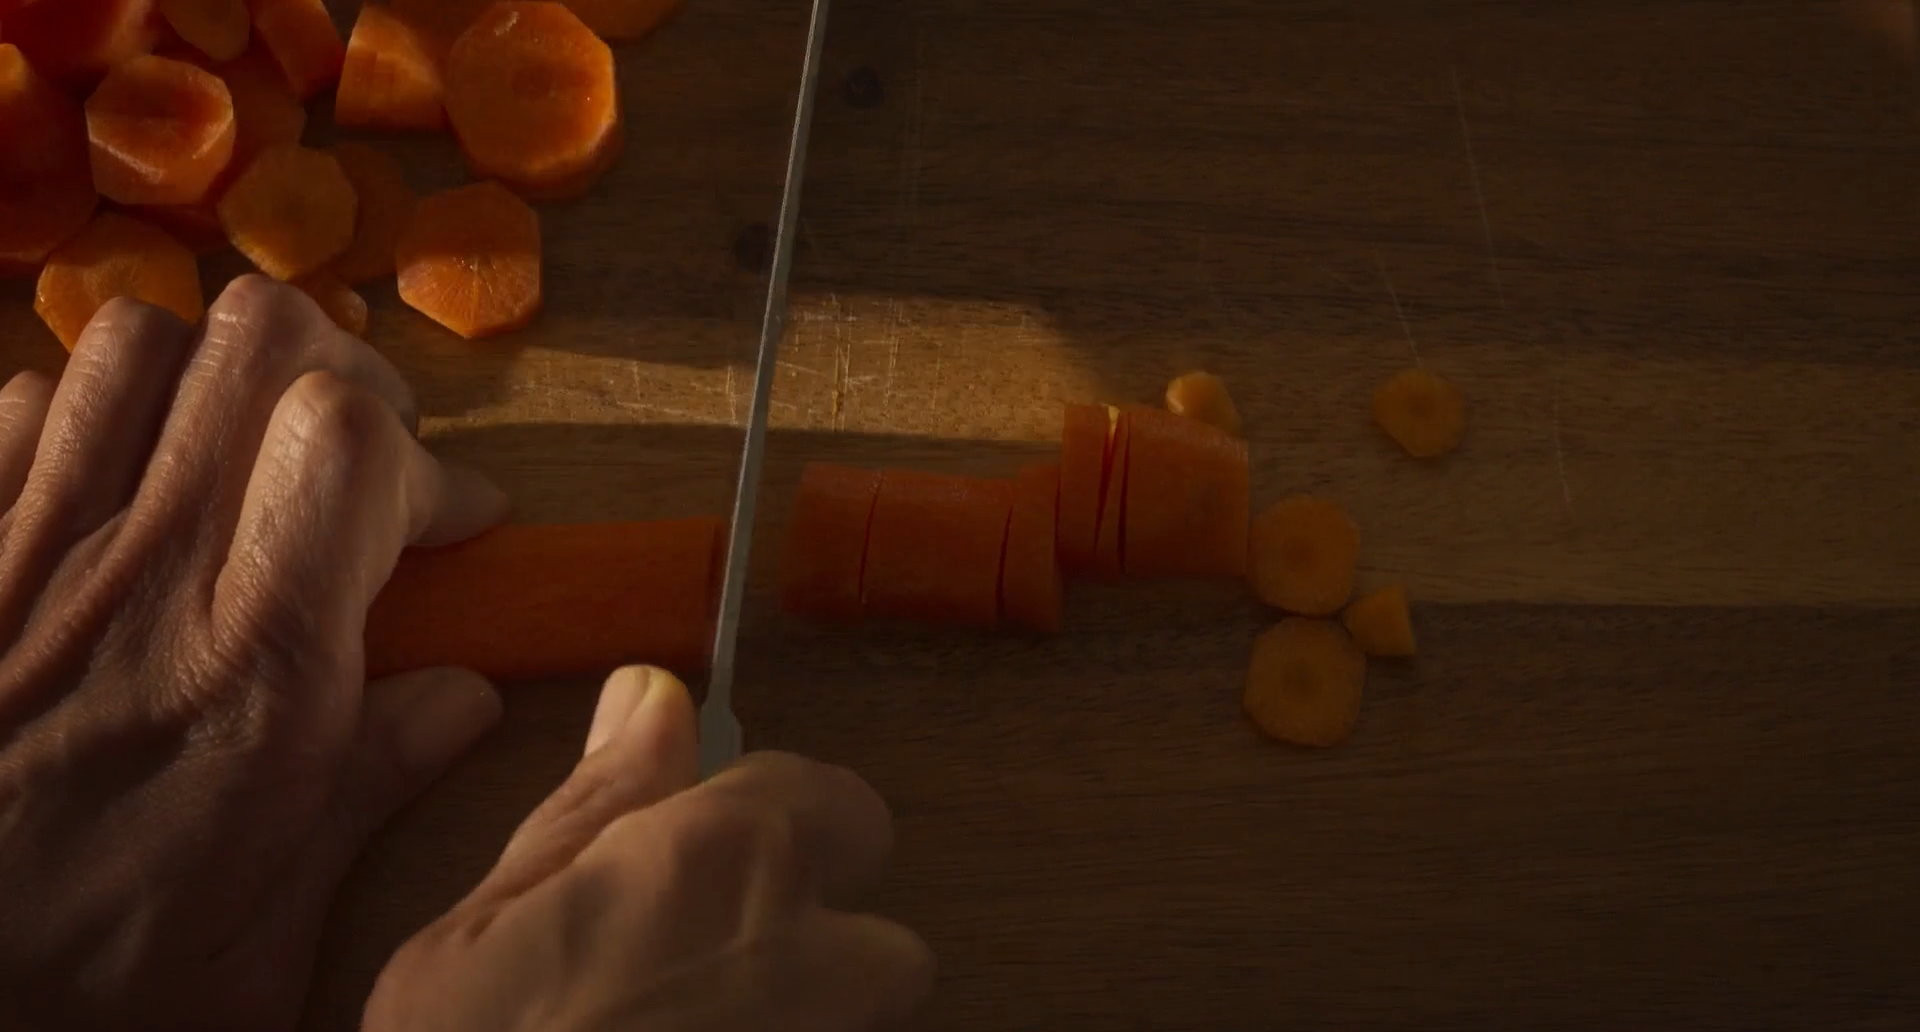 Cena do filme Mães Paralelas. Nela aparece um par de mãos cortando uma cenoura laranja com uma faca de inox prateada. As mãos estão ampliadas. O fundo é uma tábua de madeira com marcas de usos.